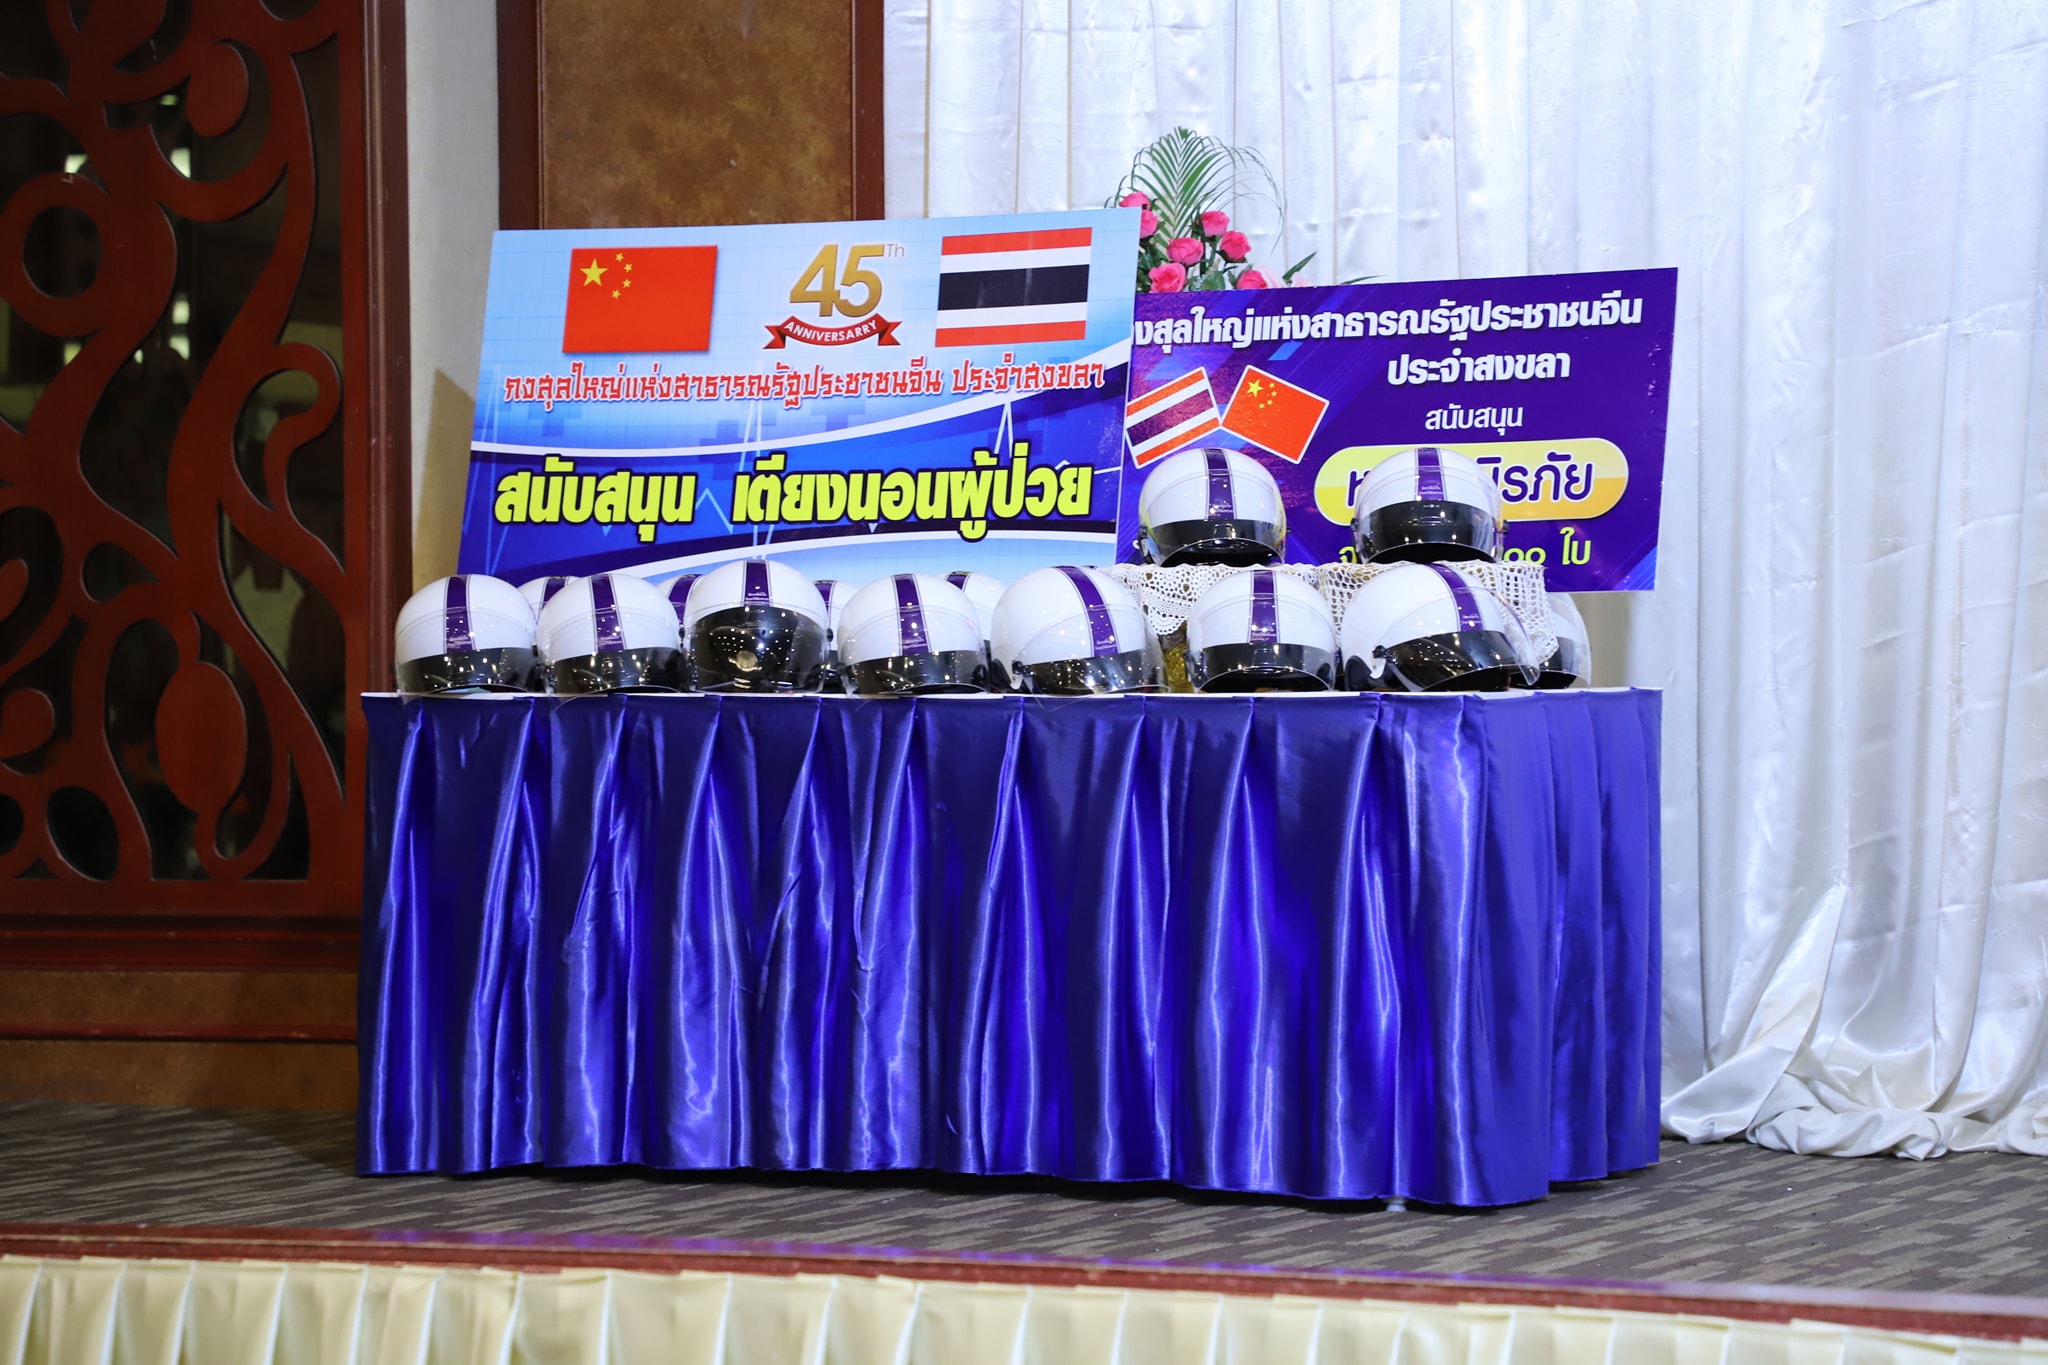 วันที่ 28 ก.ย.63 นายนิพนธ์ บุญญามณี รัฐมนตรีช่วยว่าการกระทรวงมหาดไทย เป็นประธานเปิดการอบรมขับขี่ปลอดภัยในกลุ่ม